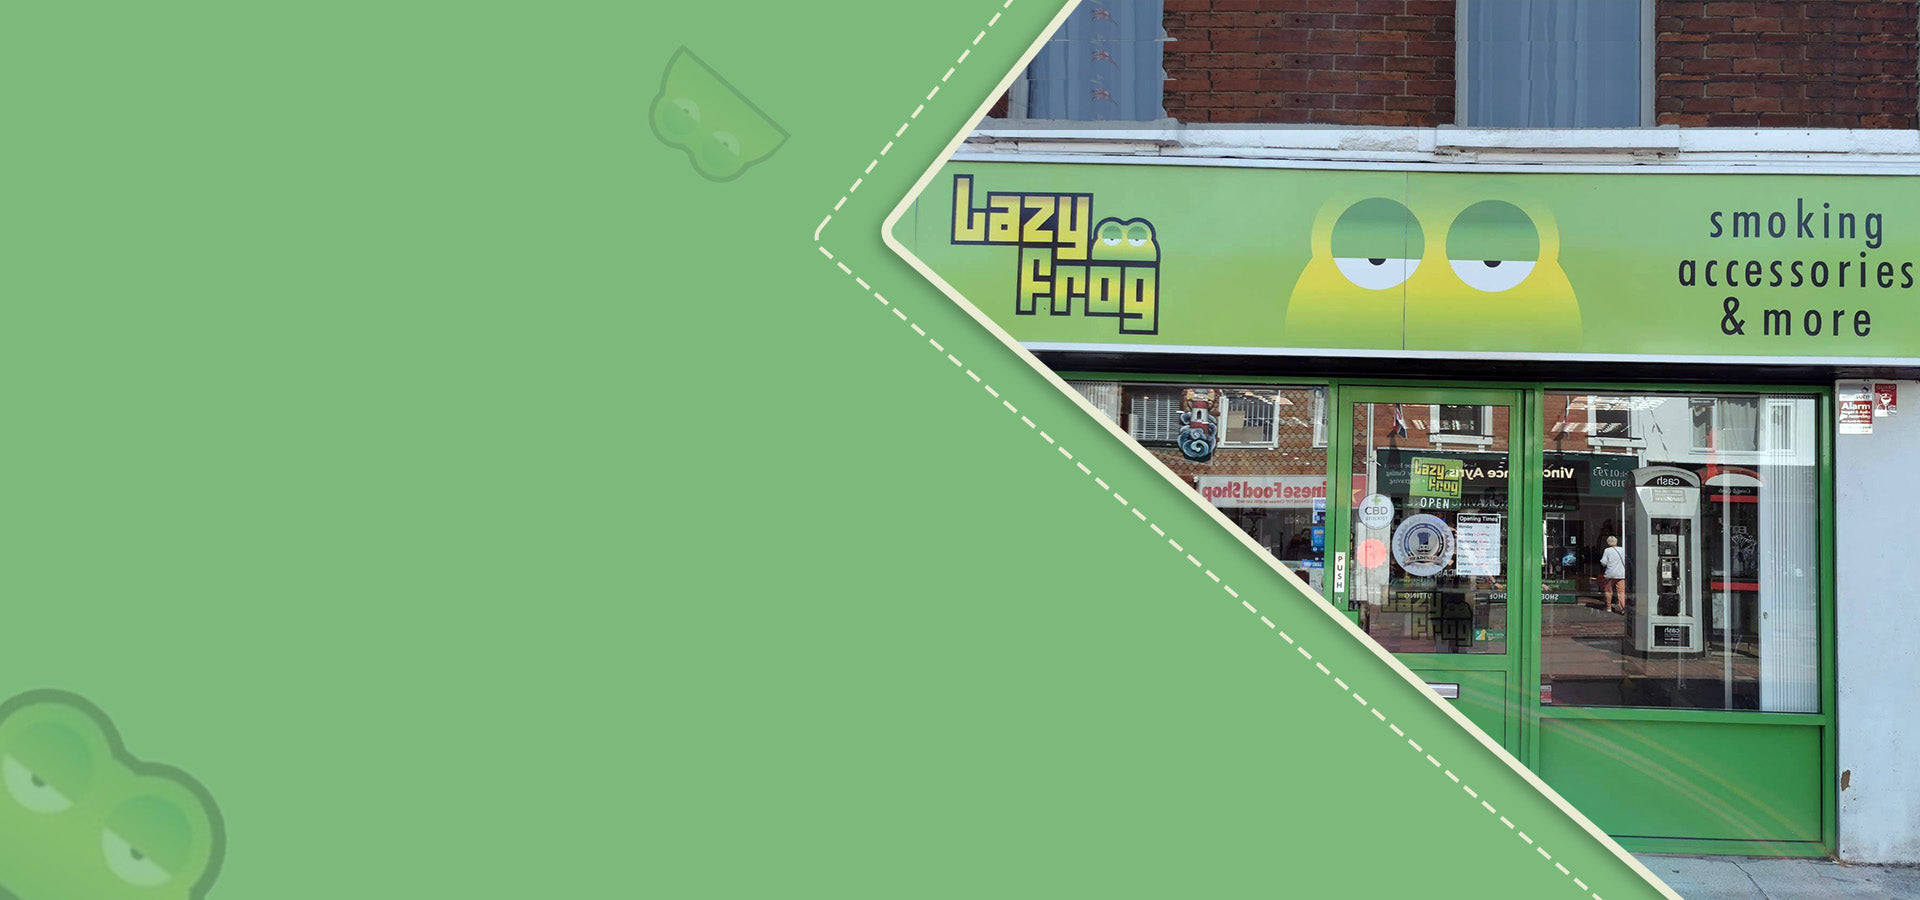 Lazy Frog Shop